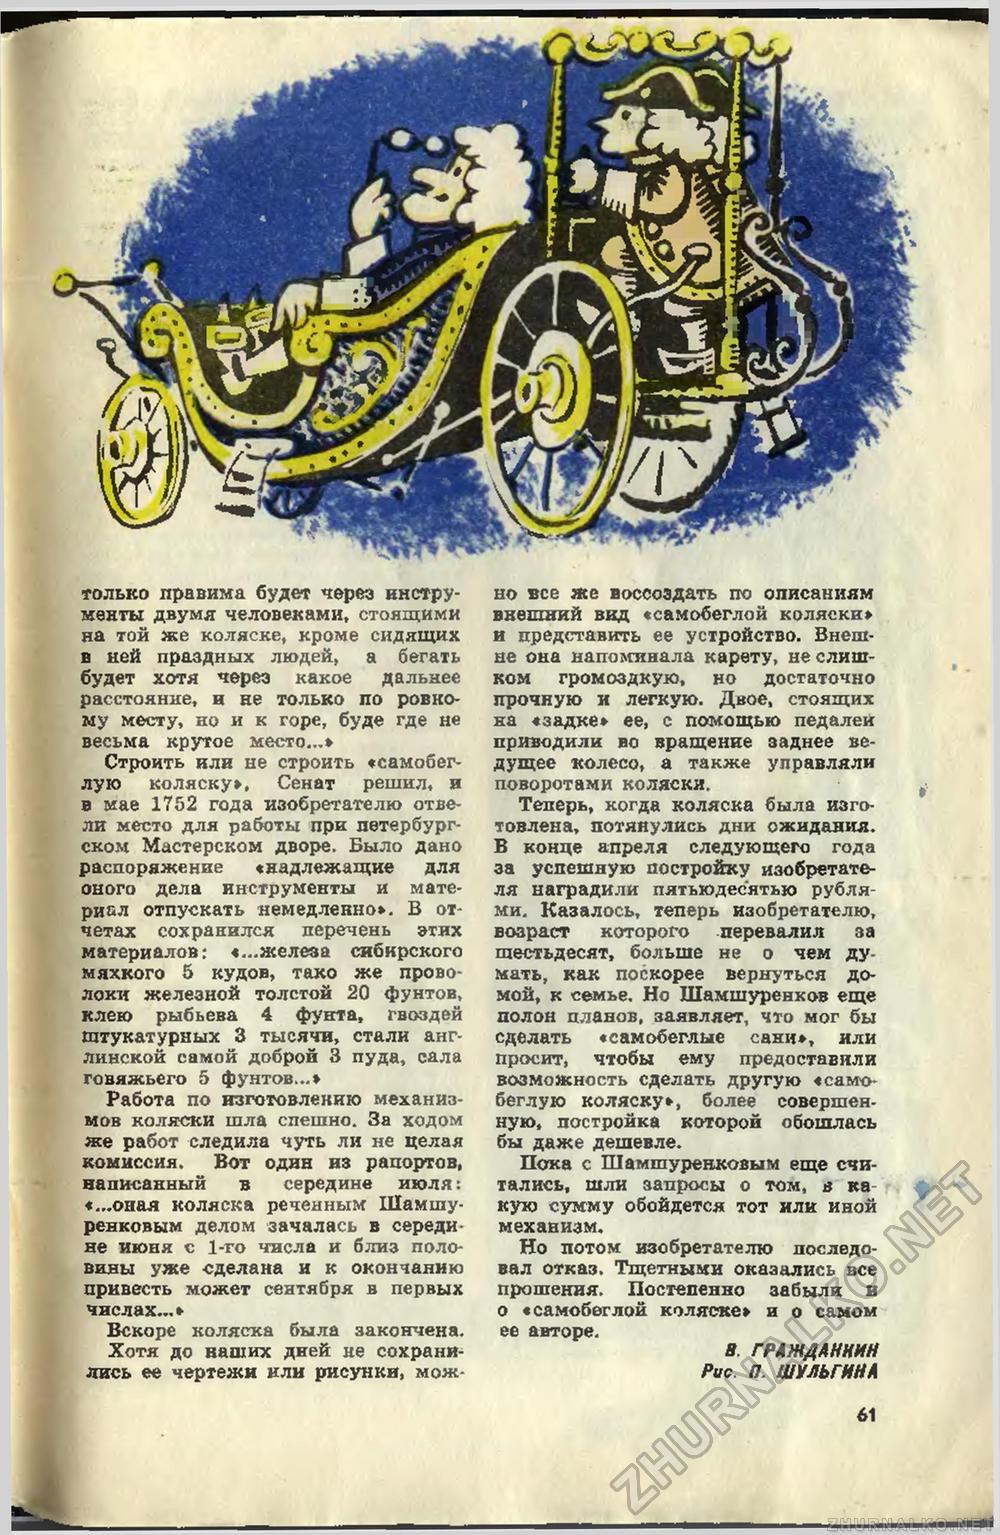   1967-12,  64